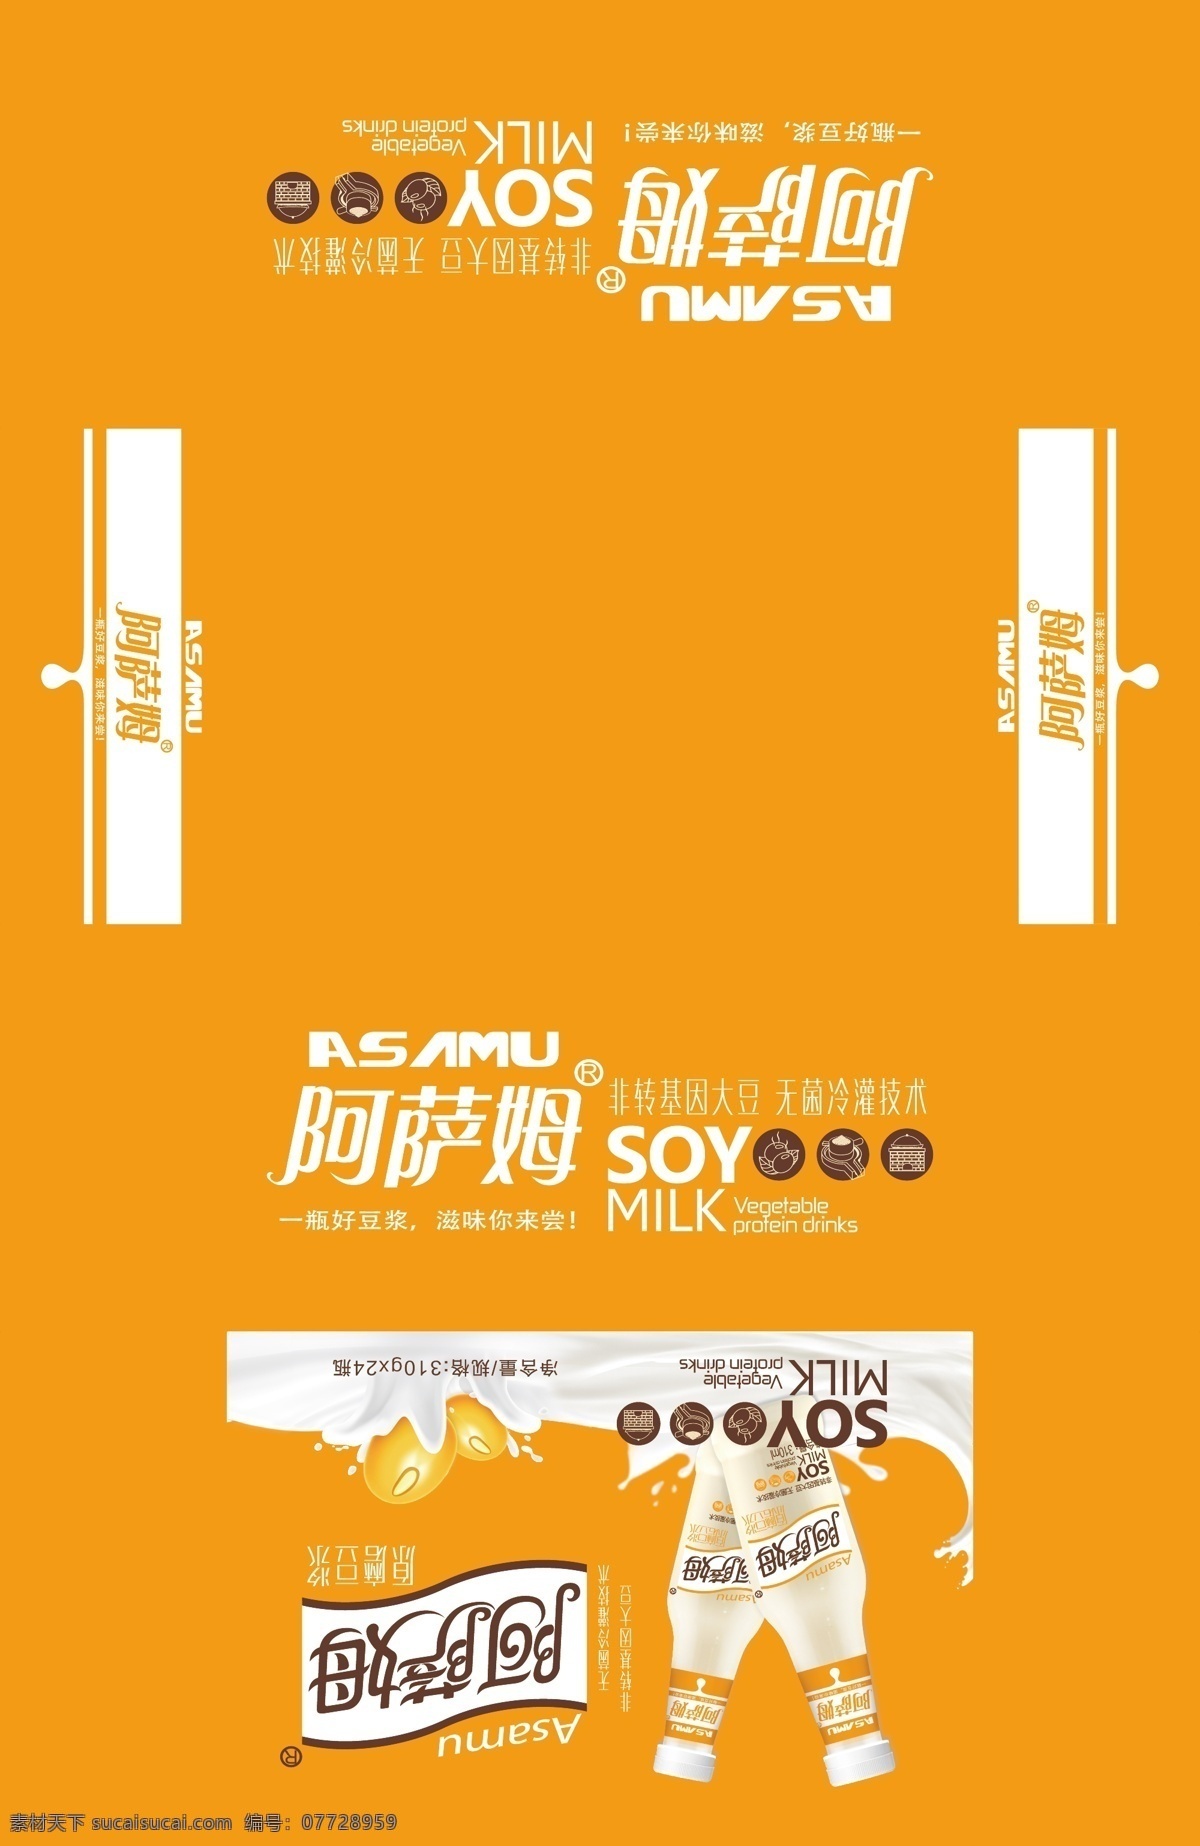 阿萨姆 豆奶 包装箱 豆奶包装箱 饮料包装箱 牛奶包装箱 阿萨姆豆奶 包装箱设计 矢量原稿 包装设计